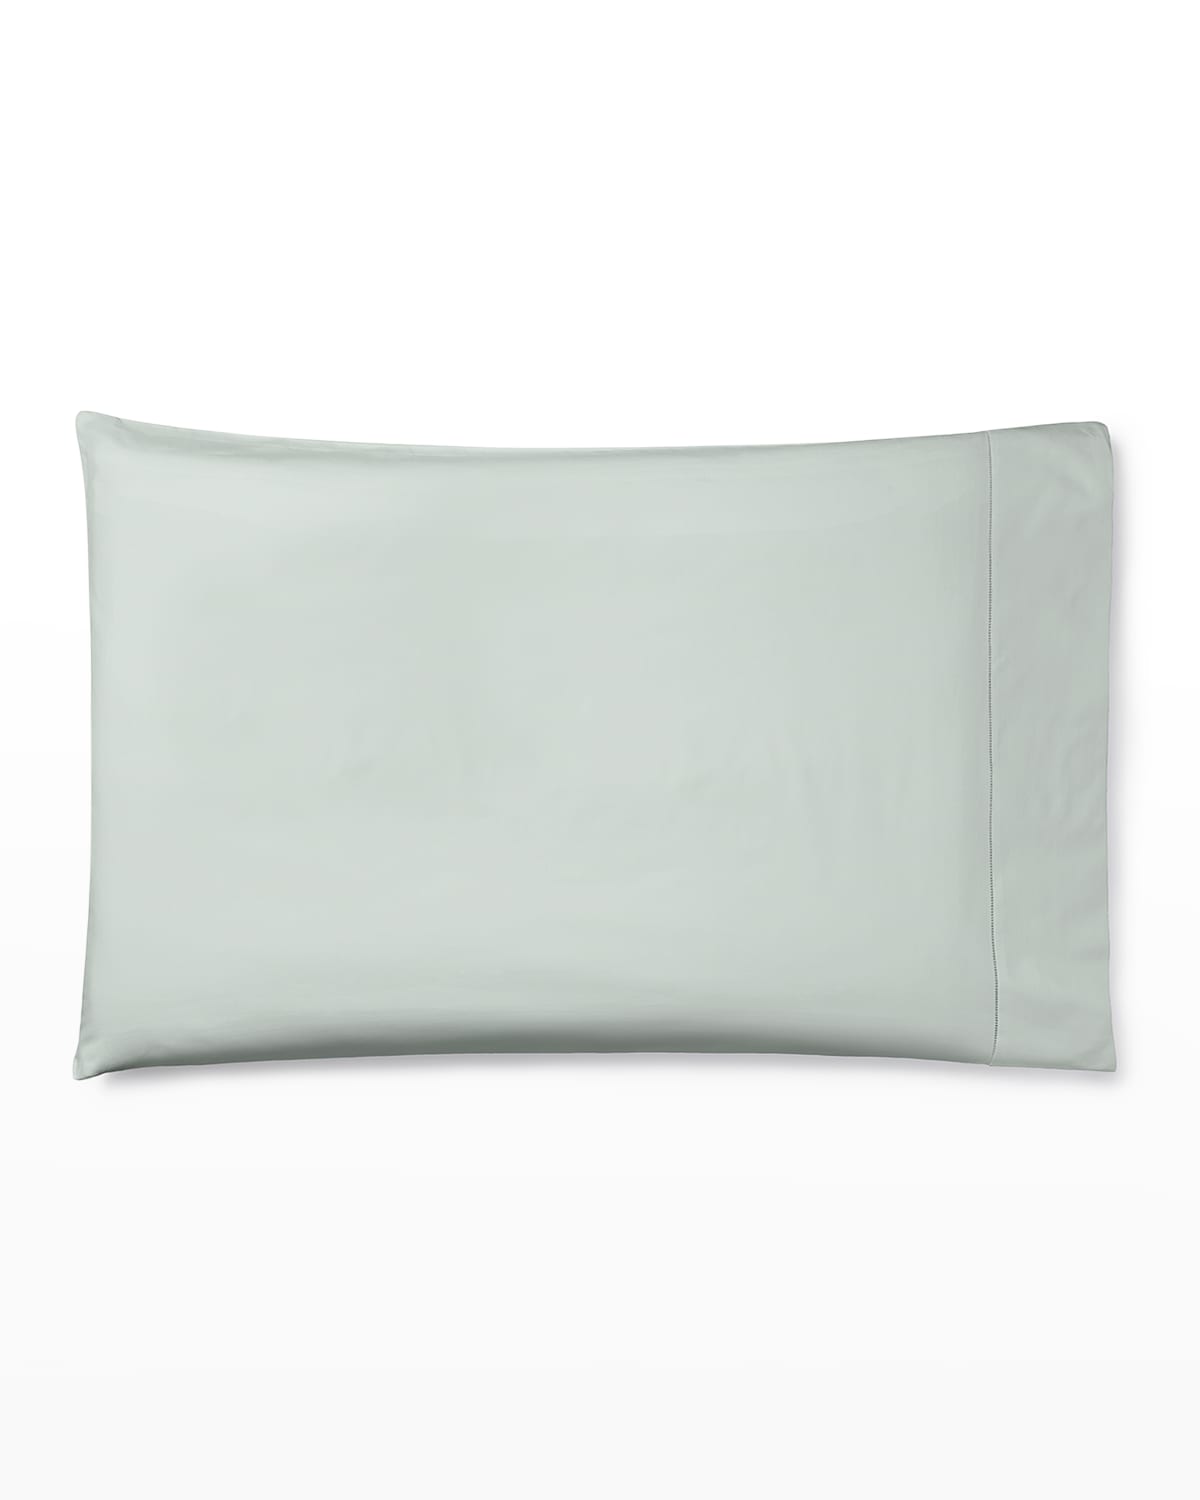 Sferra Celeste King Pillowcase In Silversage